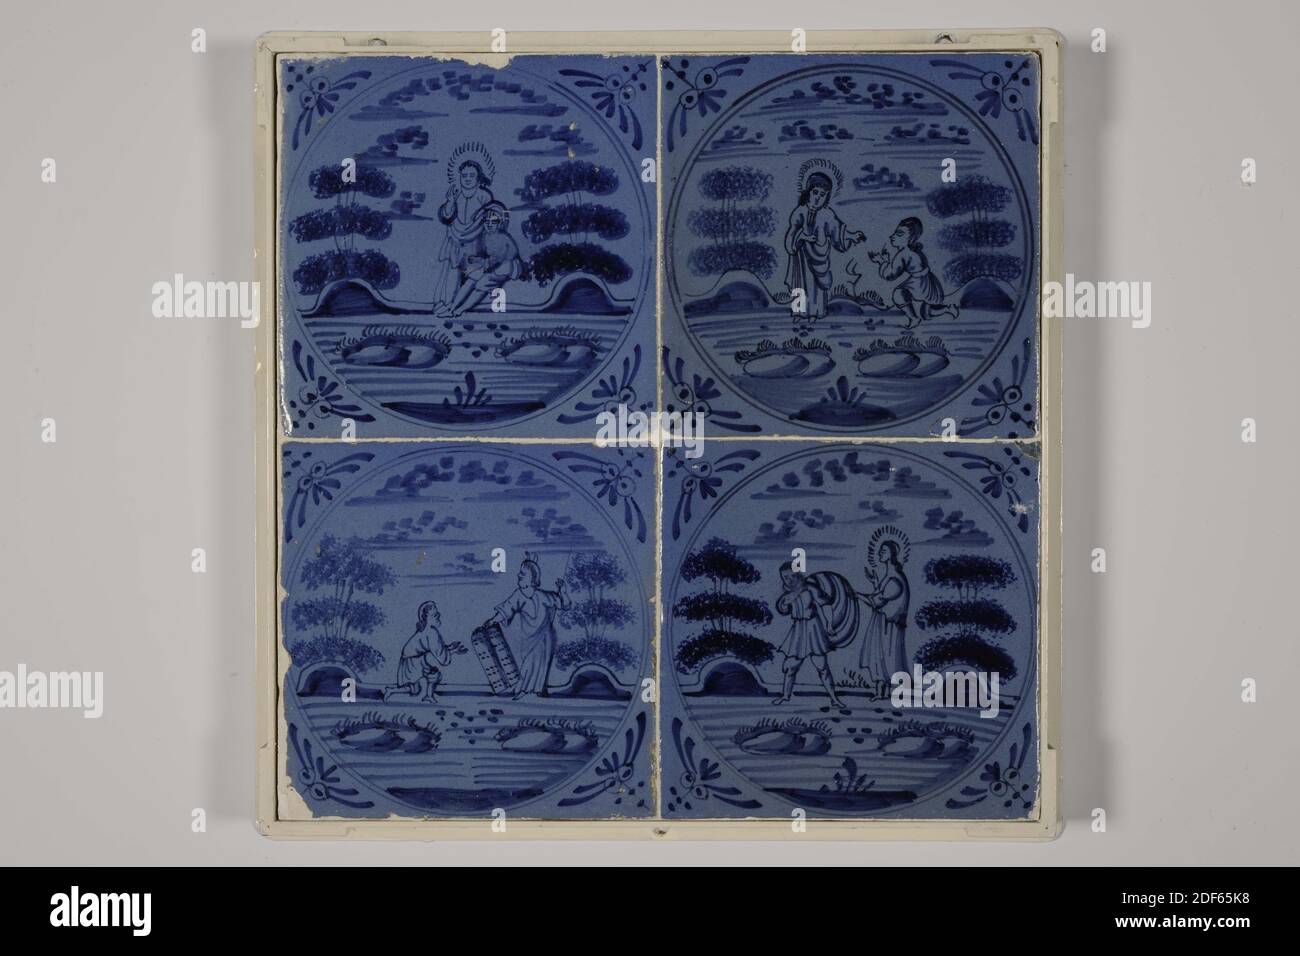 Champ de carreaux, Anonyme, deuxième moitié du XVIIe siècle, glaçure d'étain, faïence, général: 26 x 26 x 2.5cm (260 x 260 x 25mm), représentation biblique, utrecht, champ de carreaux de quatre (deux par deux) carreaux de faïence recouverts de glaçure d'étain et peints en bleu. Sur les quatre tuiles, une représentation du Nouveau Testament est représentée dans un cercle. La tuile en haut à gauche montre deux femmes par une tombe ouverte. La tuile au-dessus de droite représente un homme sur ses genoux face à un homme debout avec un halo. Un petit diable au-dessus de la tête de l'homme à genoux. En bas à gauche un homme avec une couronne, assis sur une chaise avec un homme debout dedans Banque D'Images